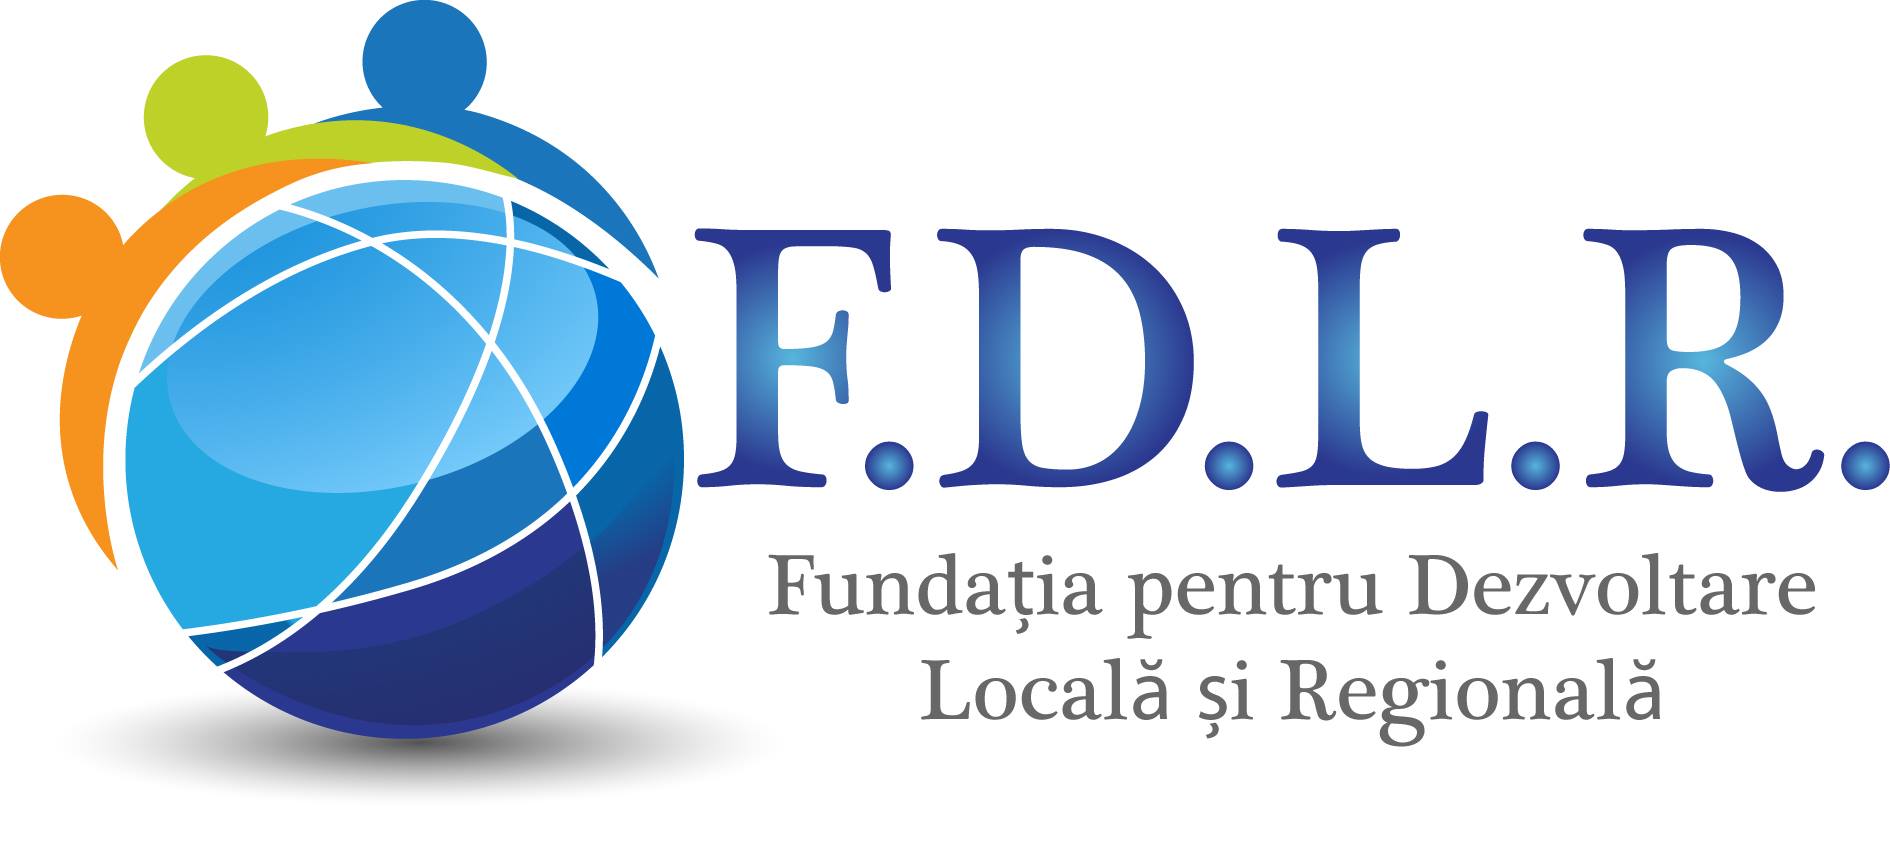 Fundația pentru Dezvoltare Locală și Regională logo